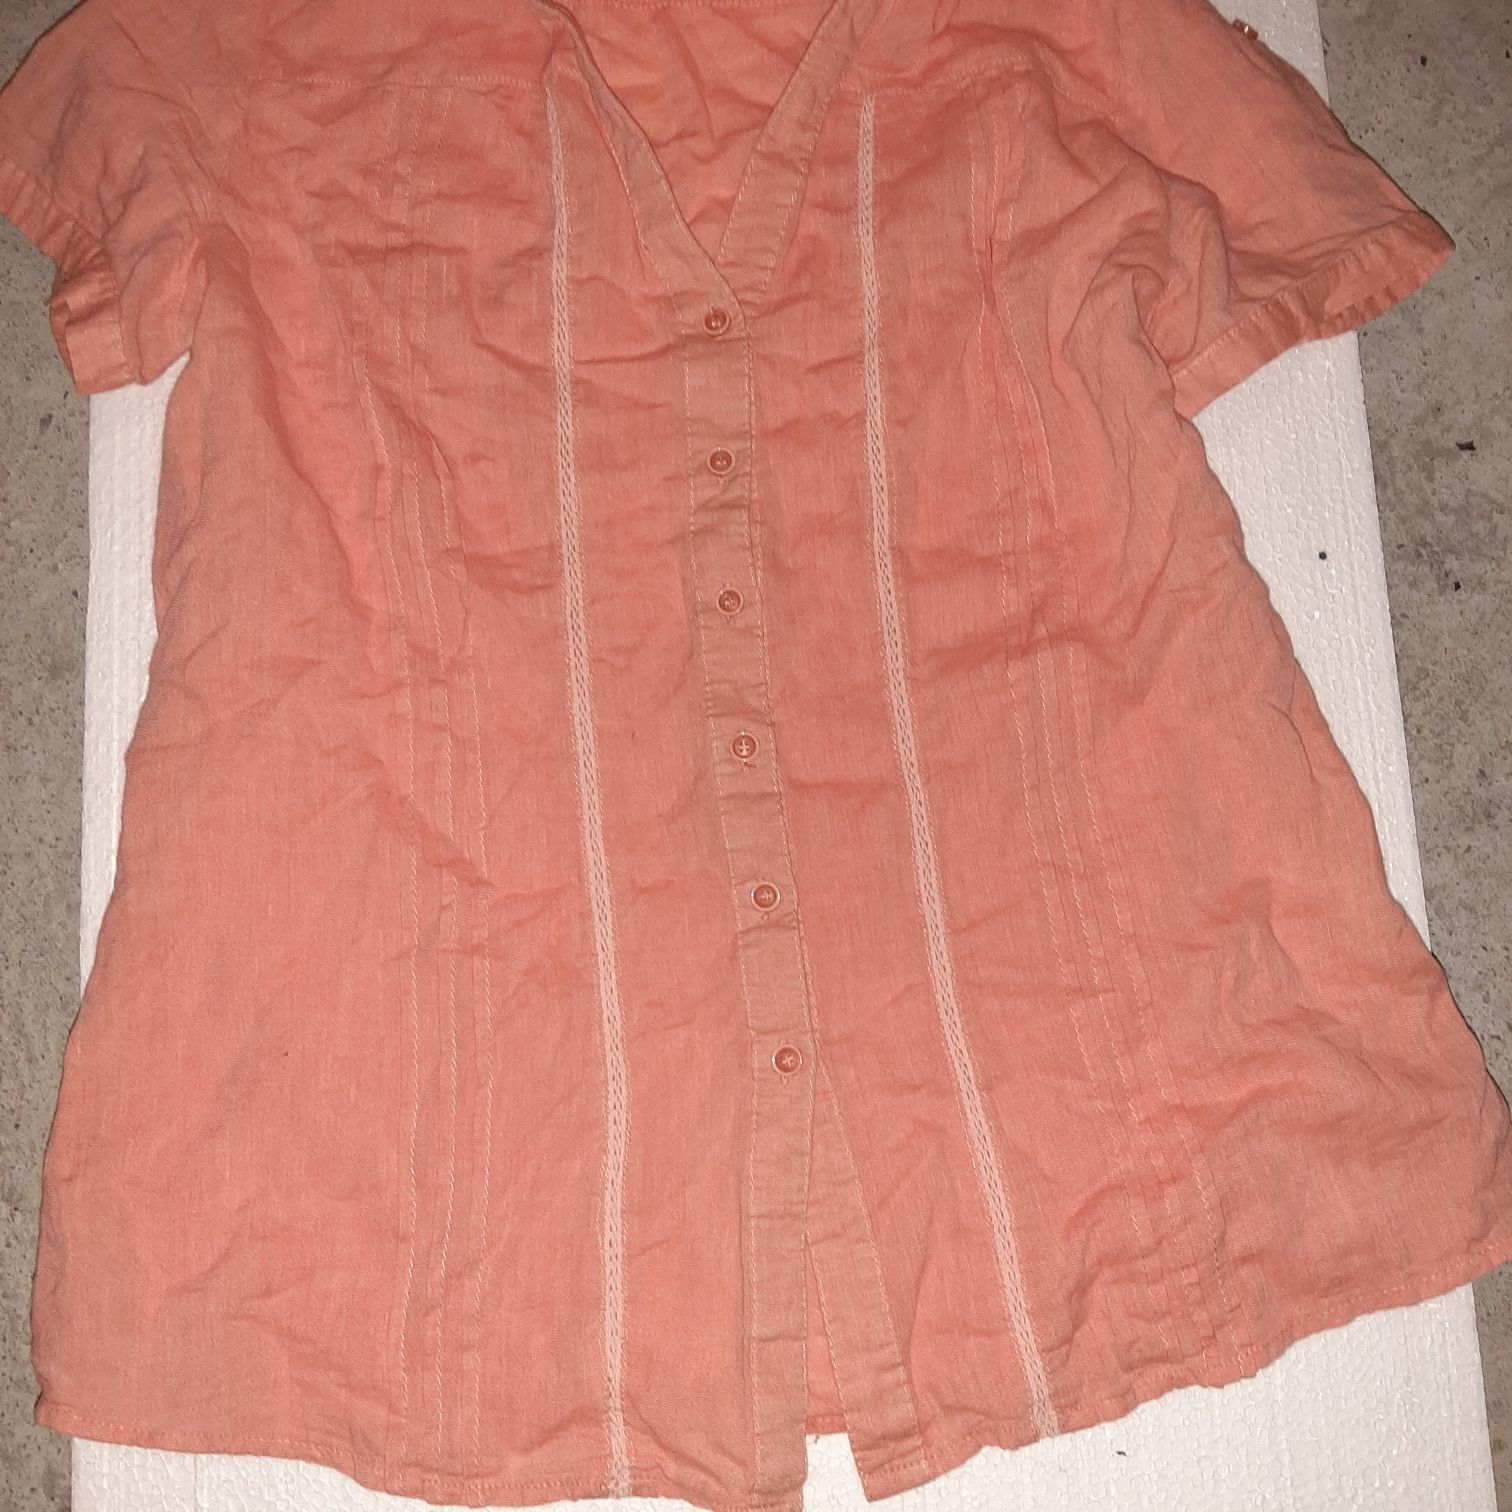 Bluzka r. M/L pomarańczowa koszula krótki rękaw